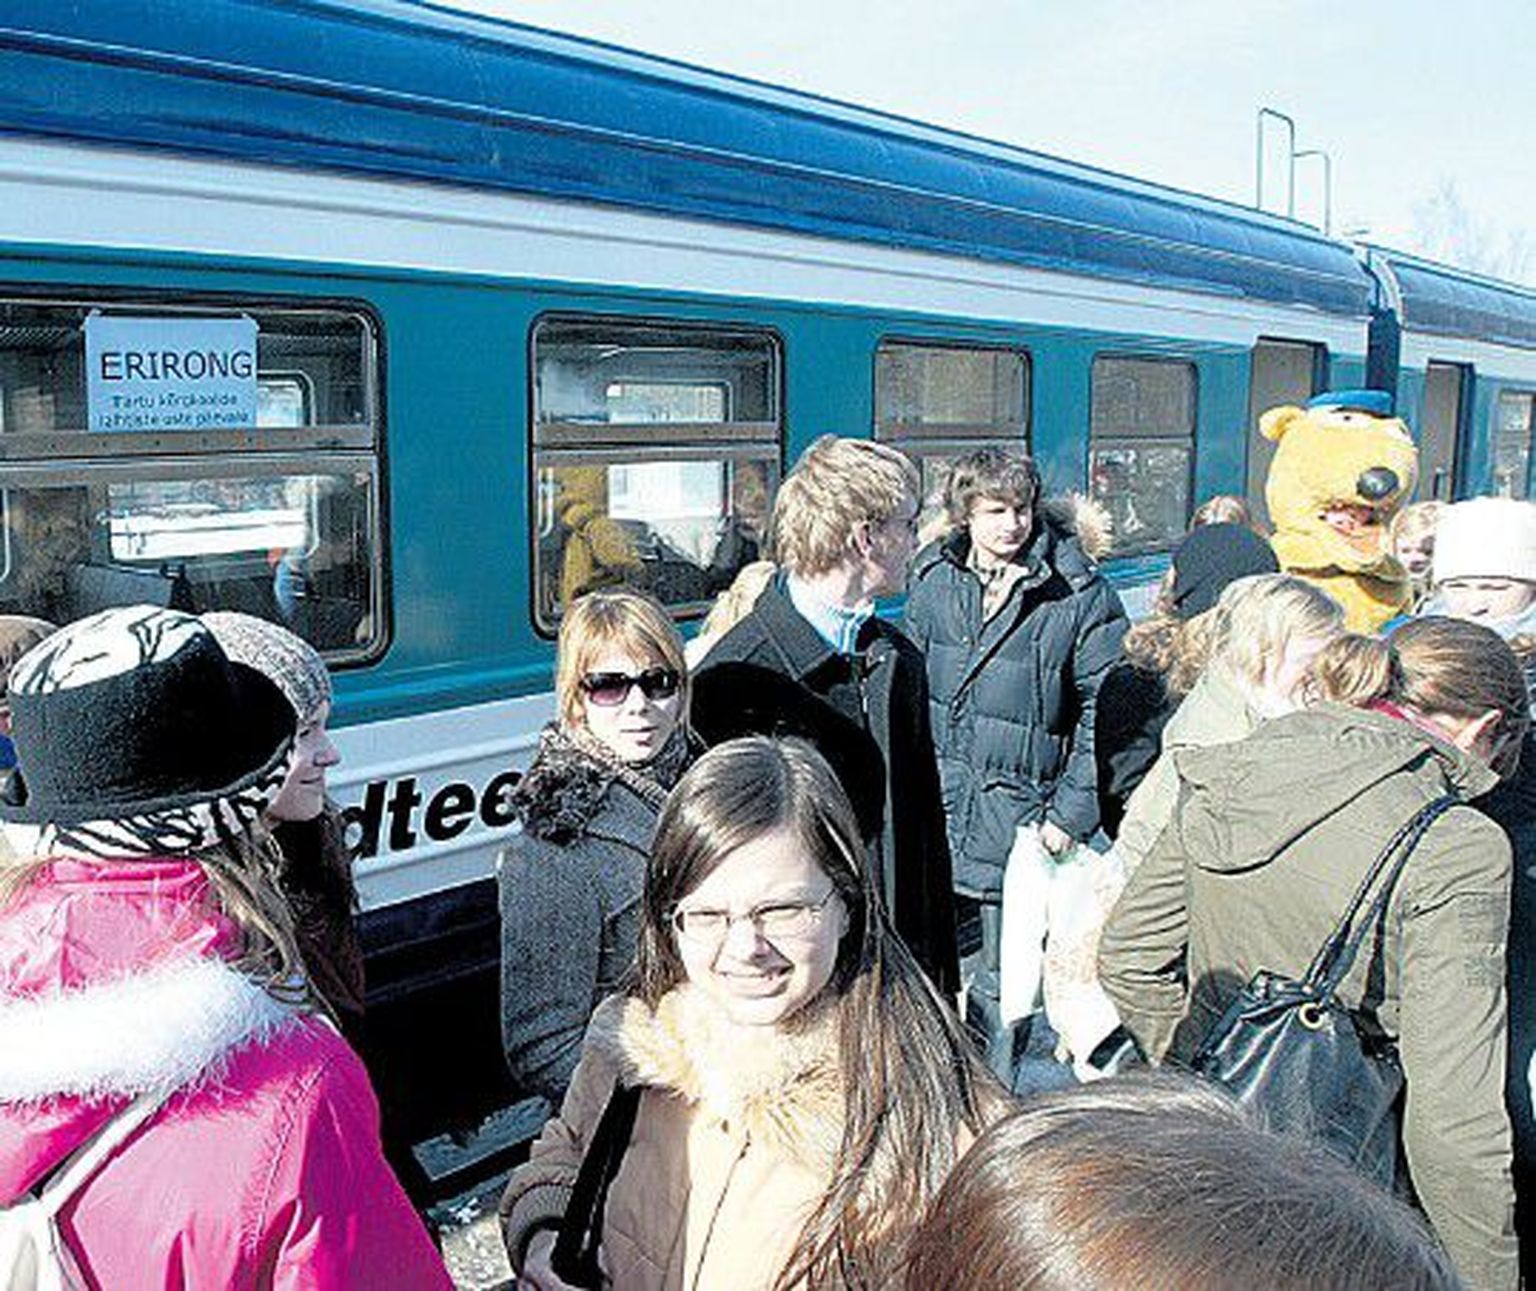 Tänavugi toob erirong huvilisi Tallinnast Tartusse avatud uste päevadele.